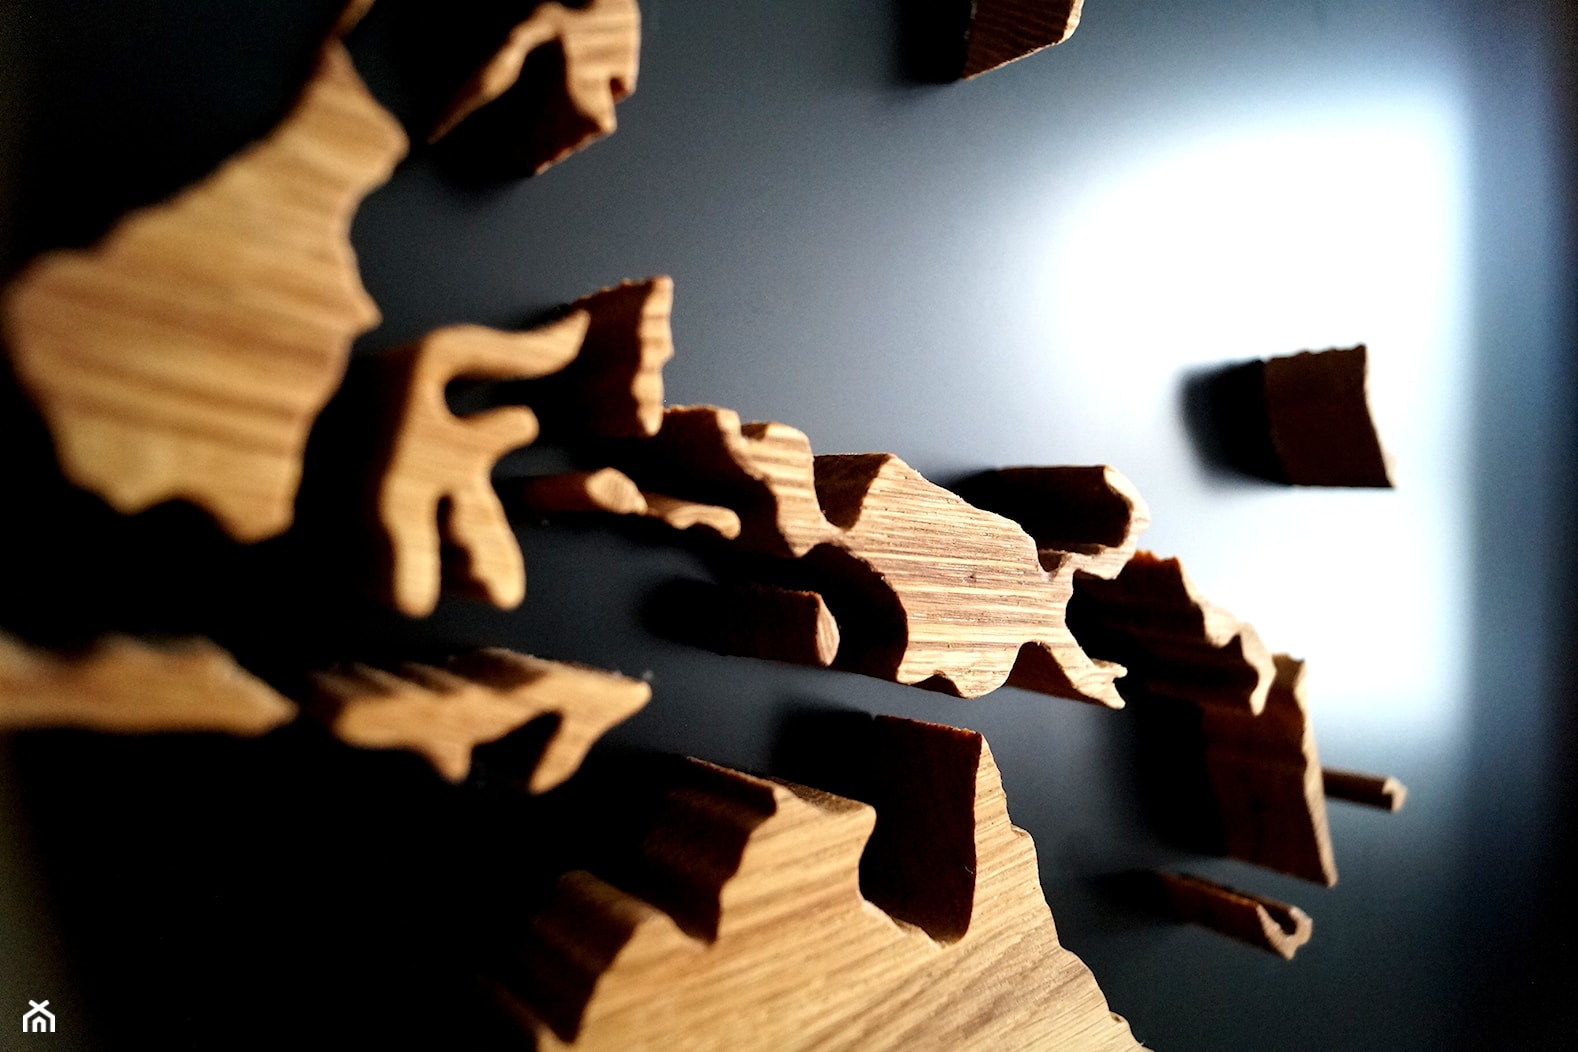 Drewniana Mapa Świata - 100 x 50 cm - zdjęcie od drewnianemapy - Homebook